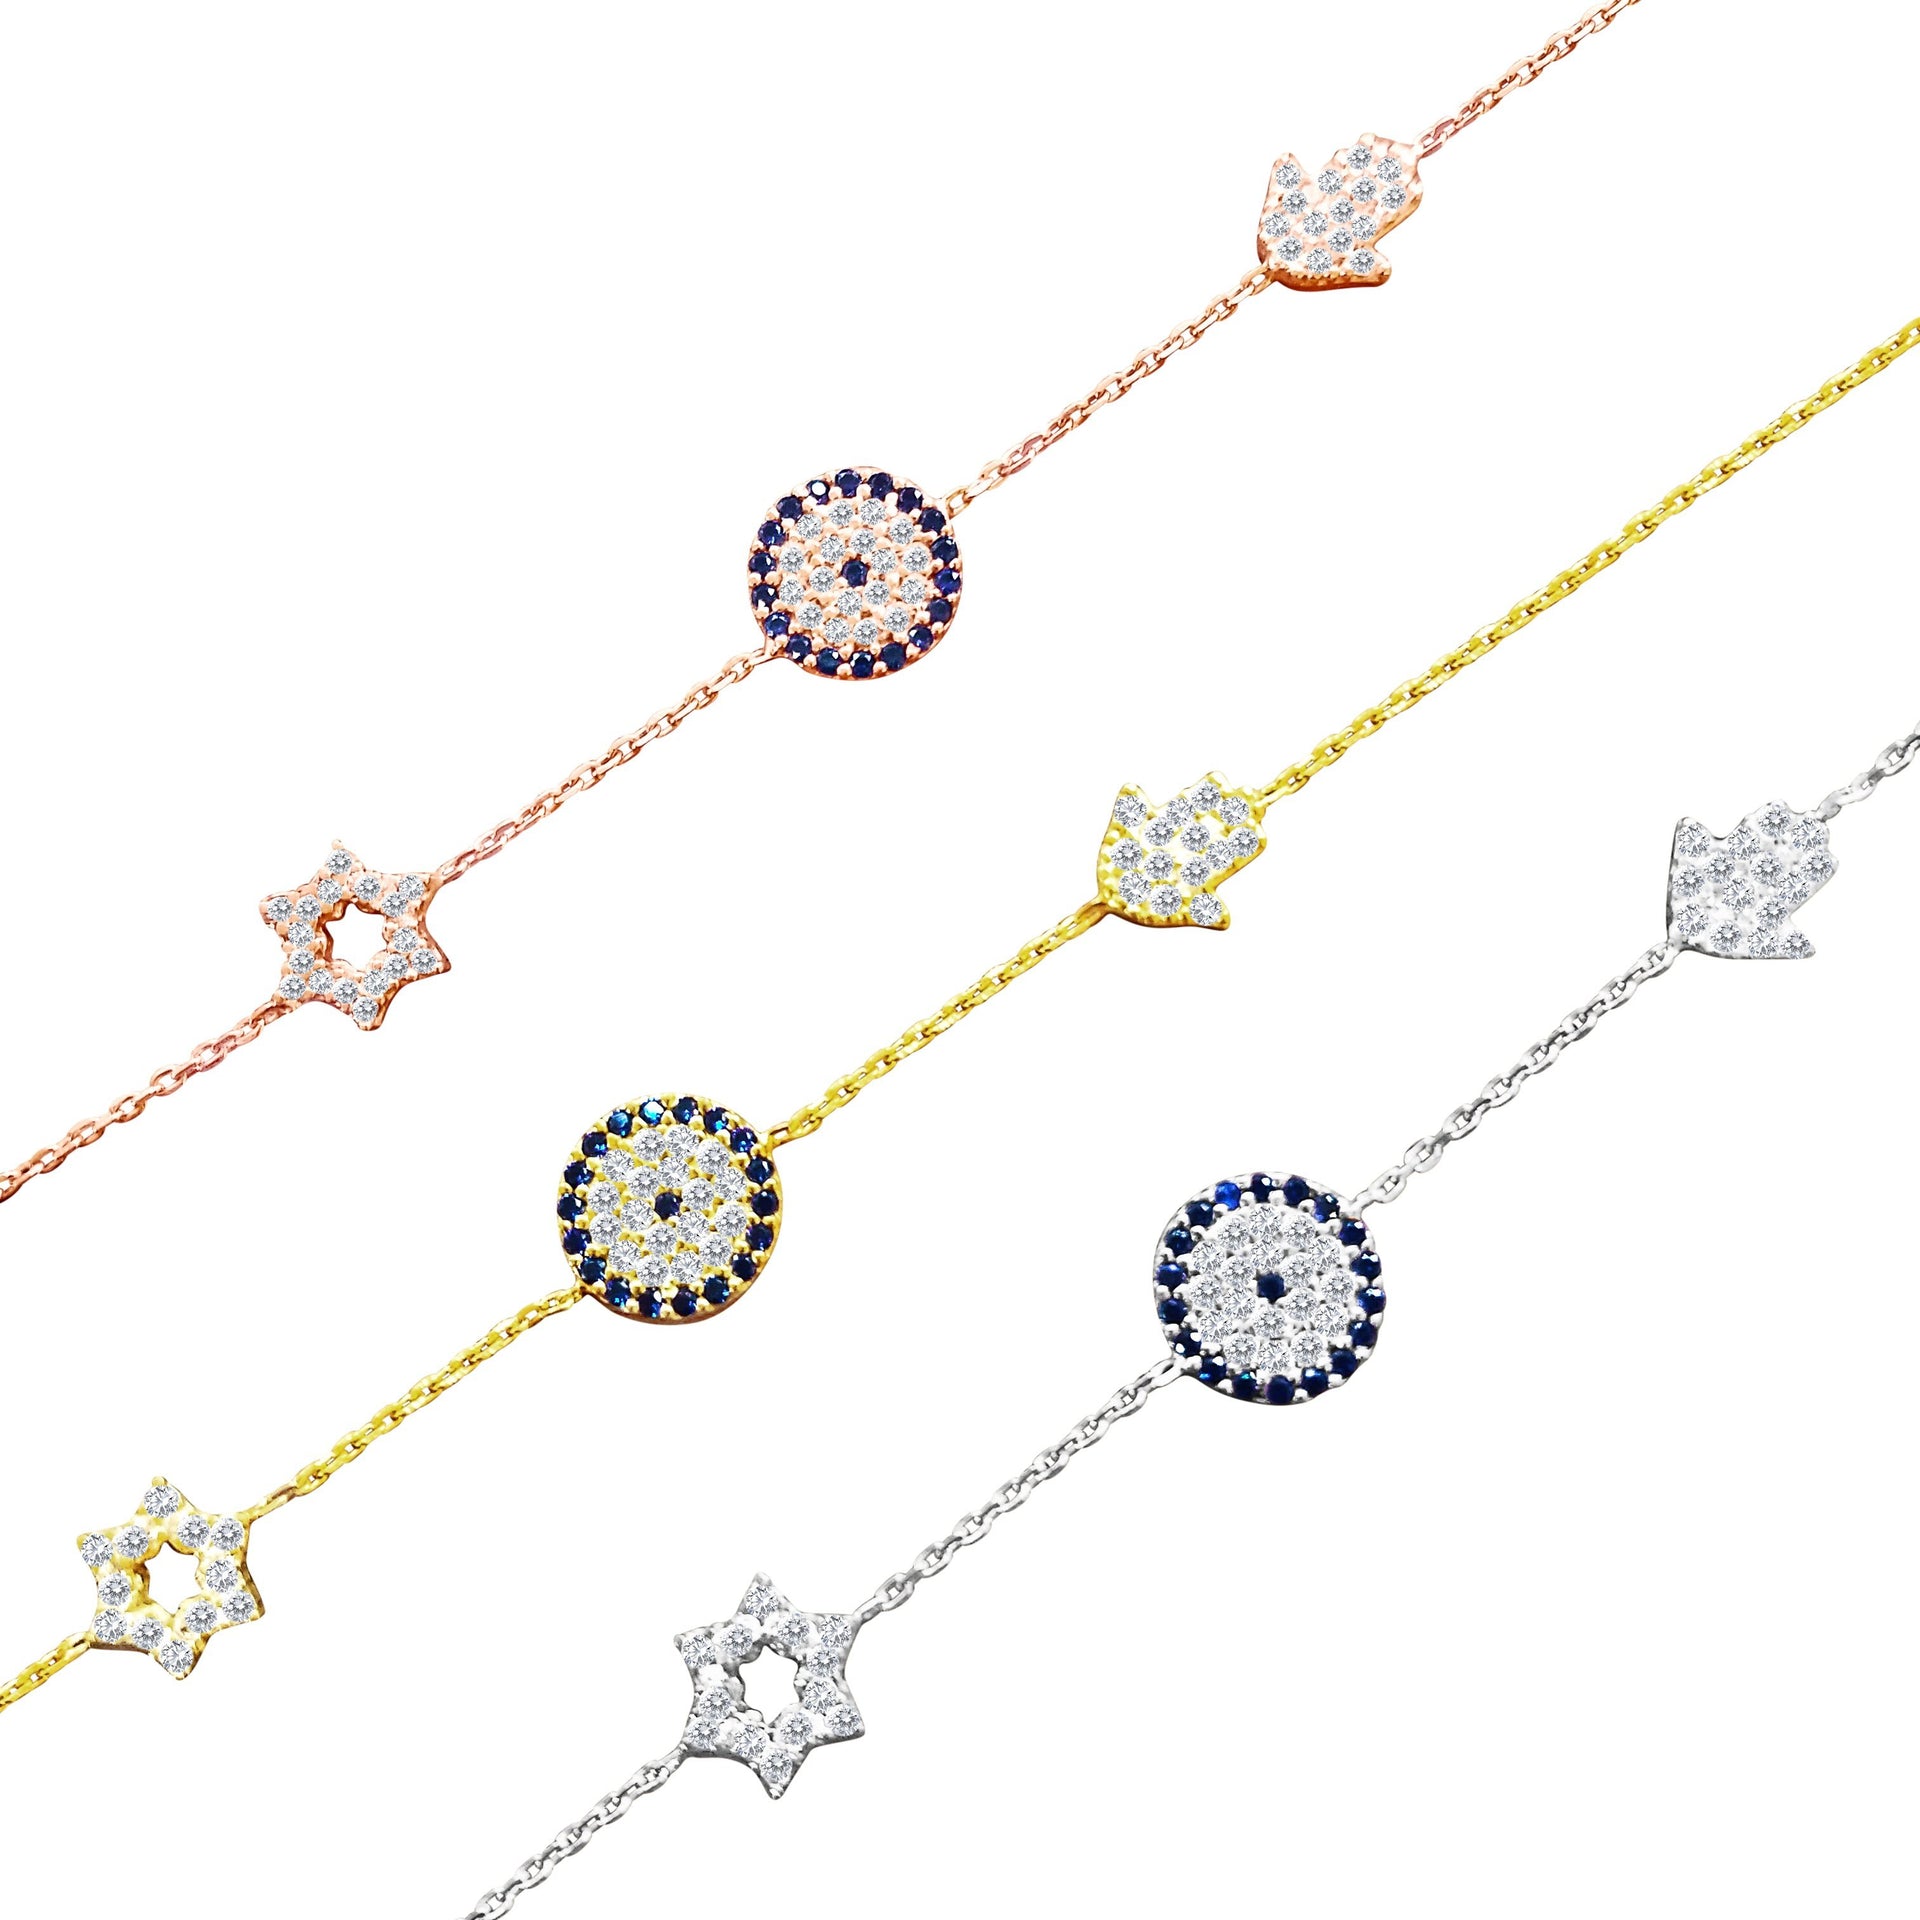 Star, Hamsa and Eye Bracelet - Alef Bet Jewelry by Paula